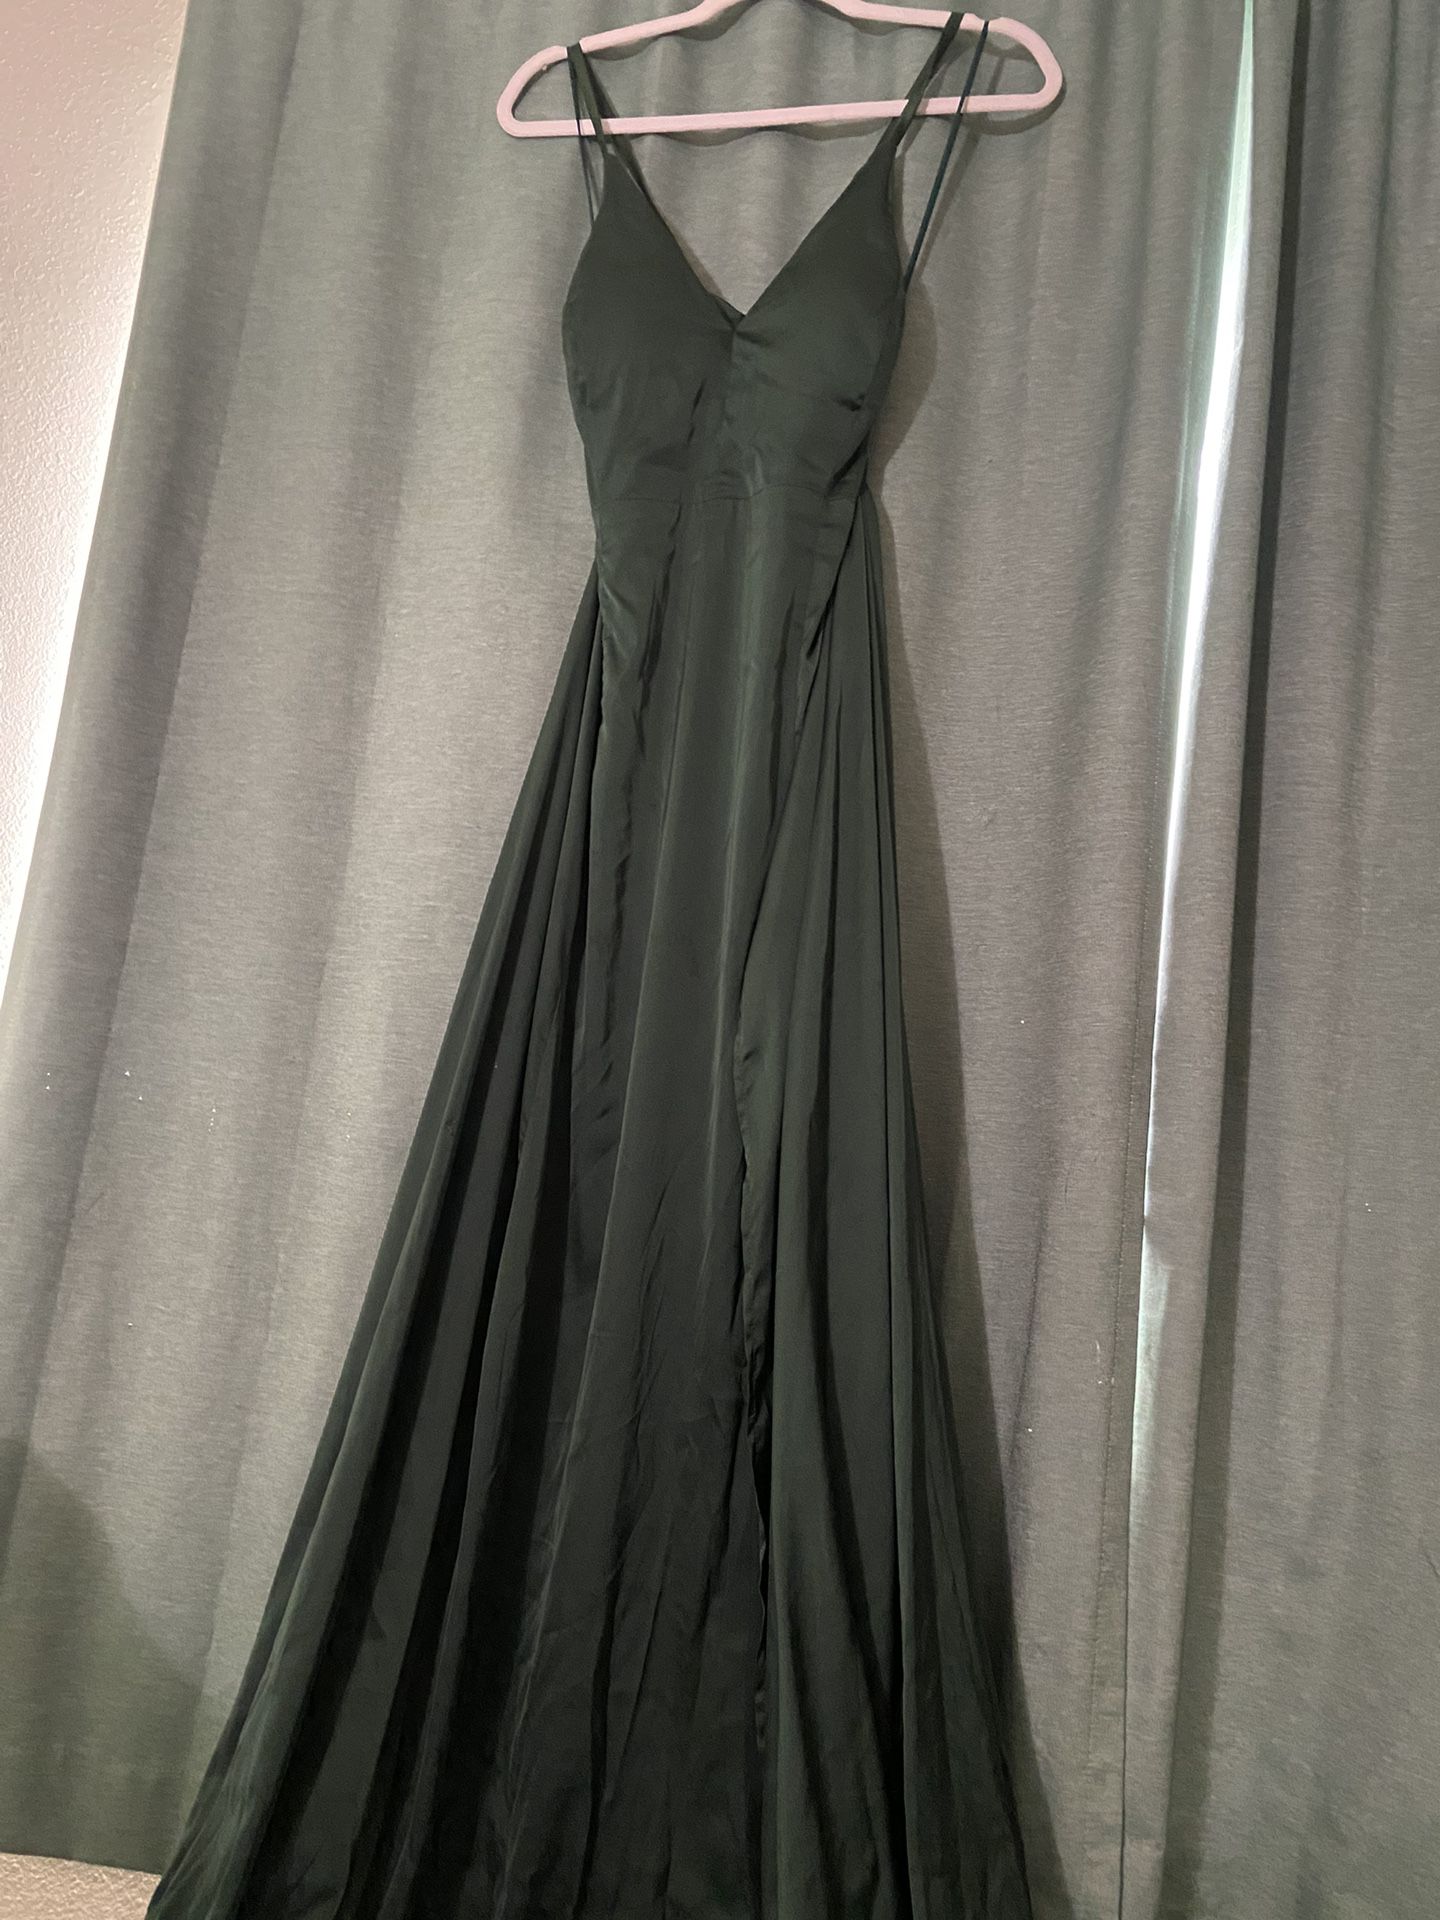 Dark Green Prom Dress